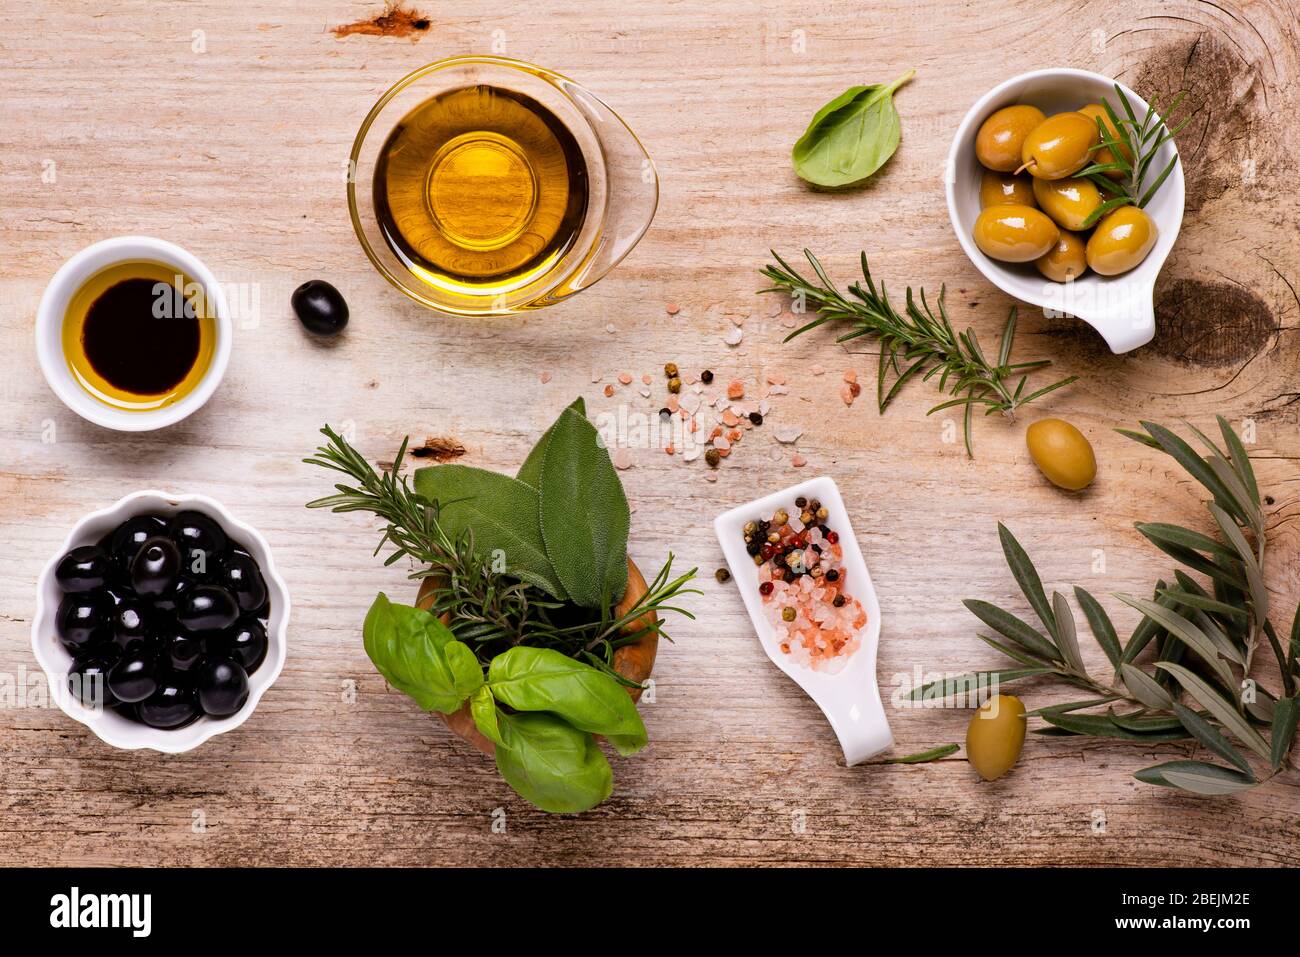 vue sur le dessus, sur la table rustique en bois, l'arrangement de bols avec olives, variété d'épices, branche d'olive et huile d'olive extra vierge. Toujours la vie Banque D'Images